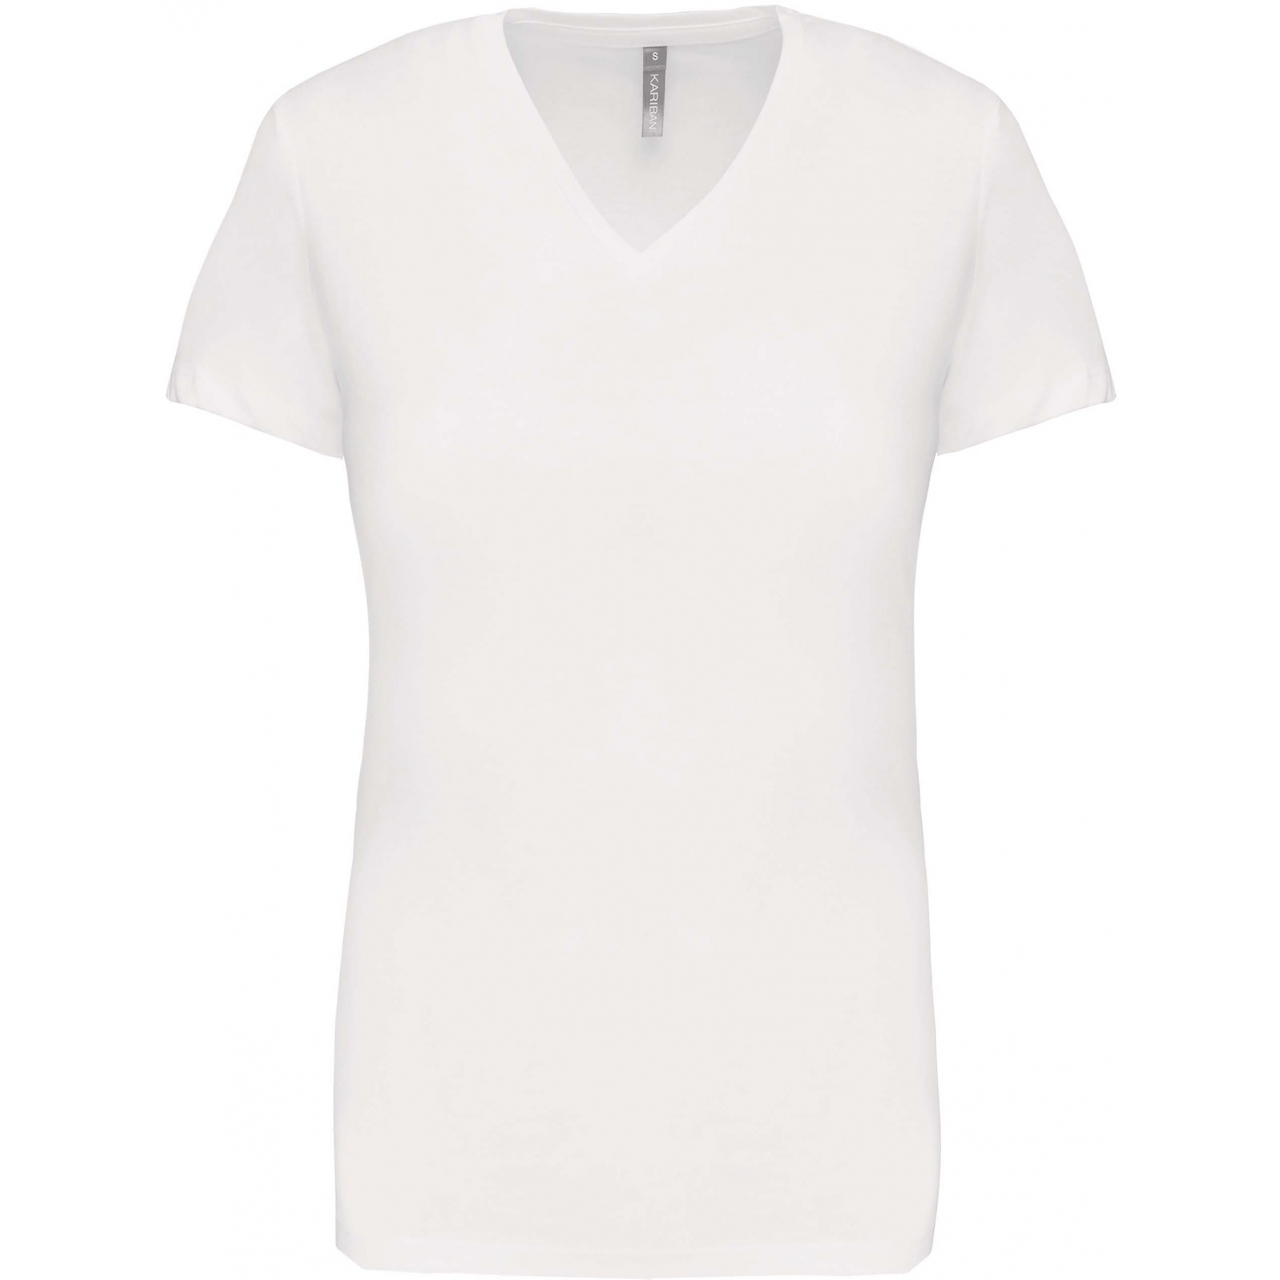 Dámské tričko Kariban V-neck s krátkým rukávem - bílé, XL